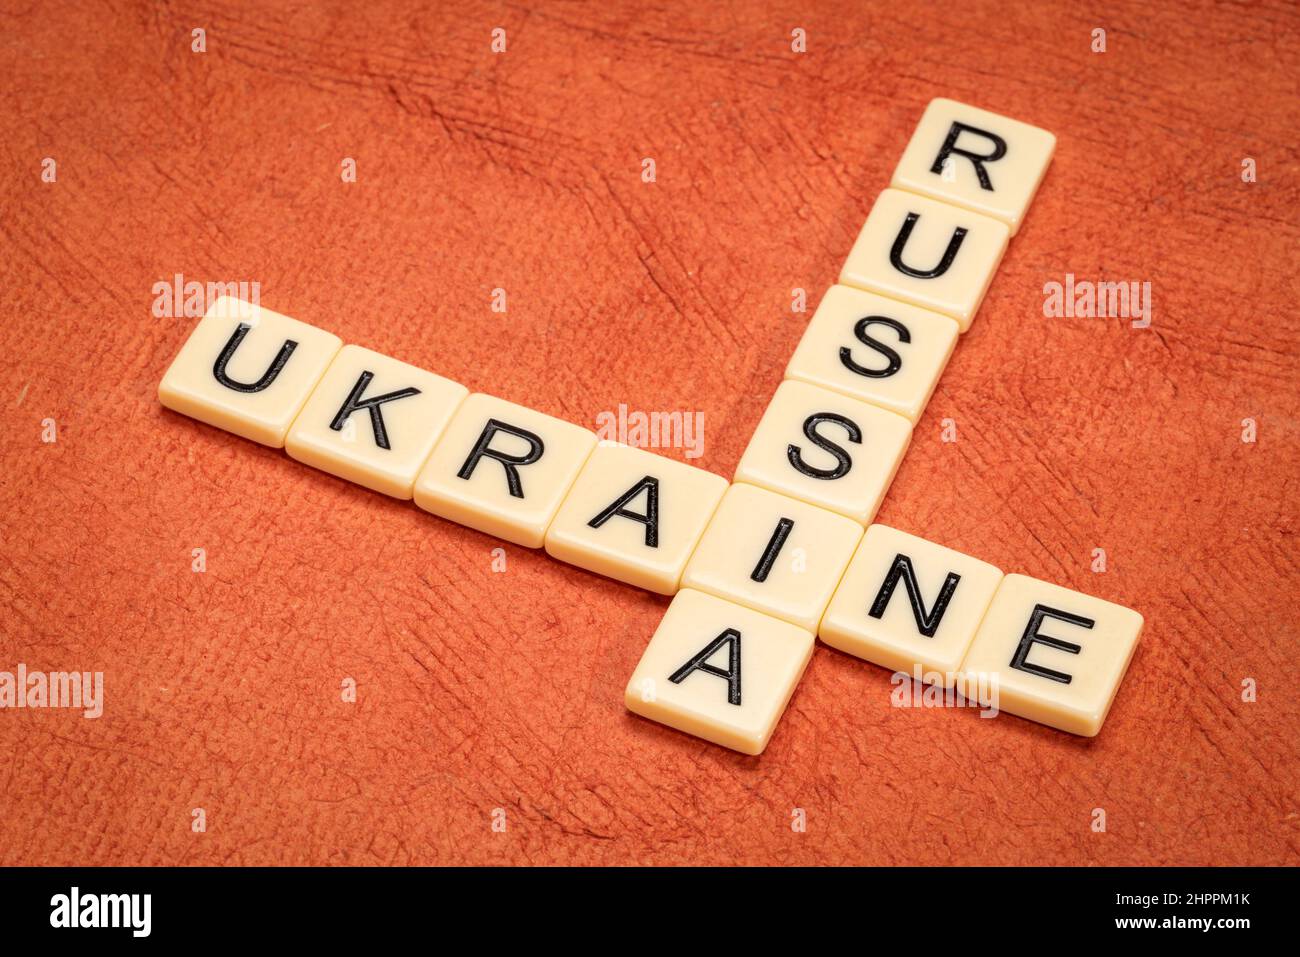 Kreuzworträtsel der Ukraine und Russlands in Elfenbein-Buchstabenkacheln gegen strukturiertes handgefertigtes Papier Stockfoto